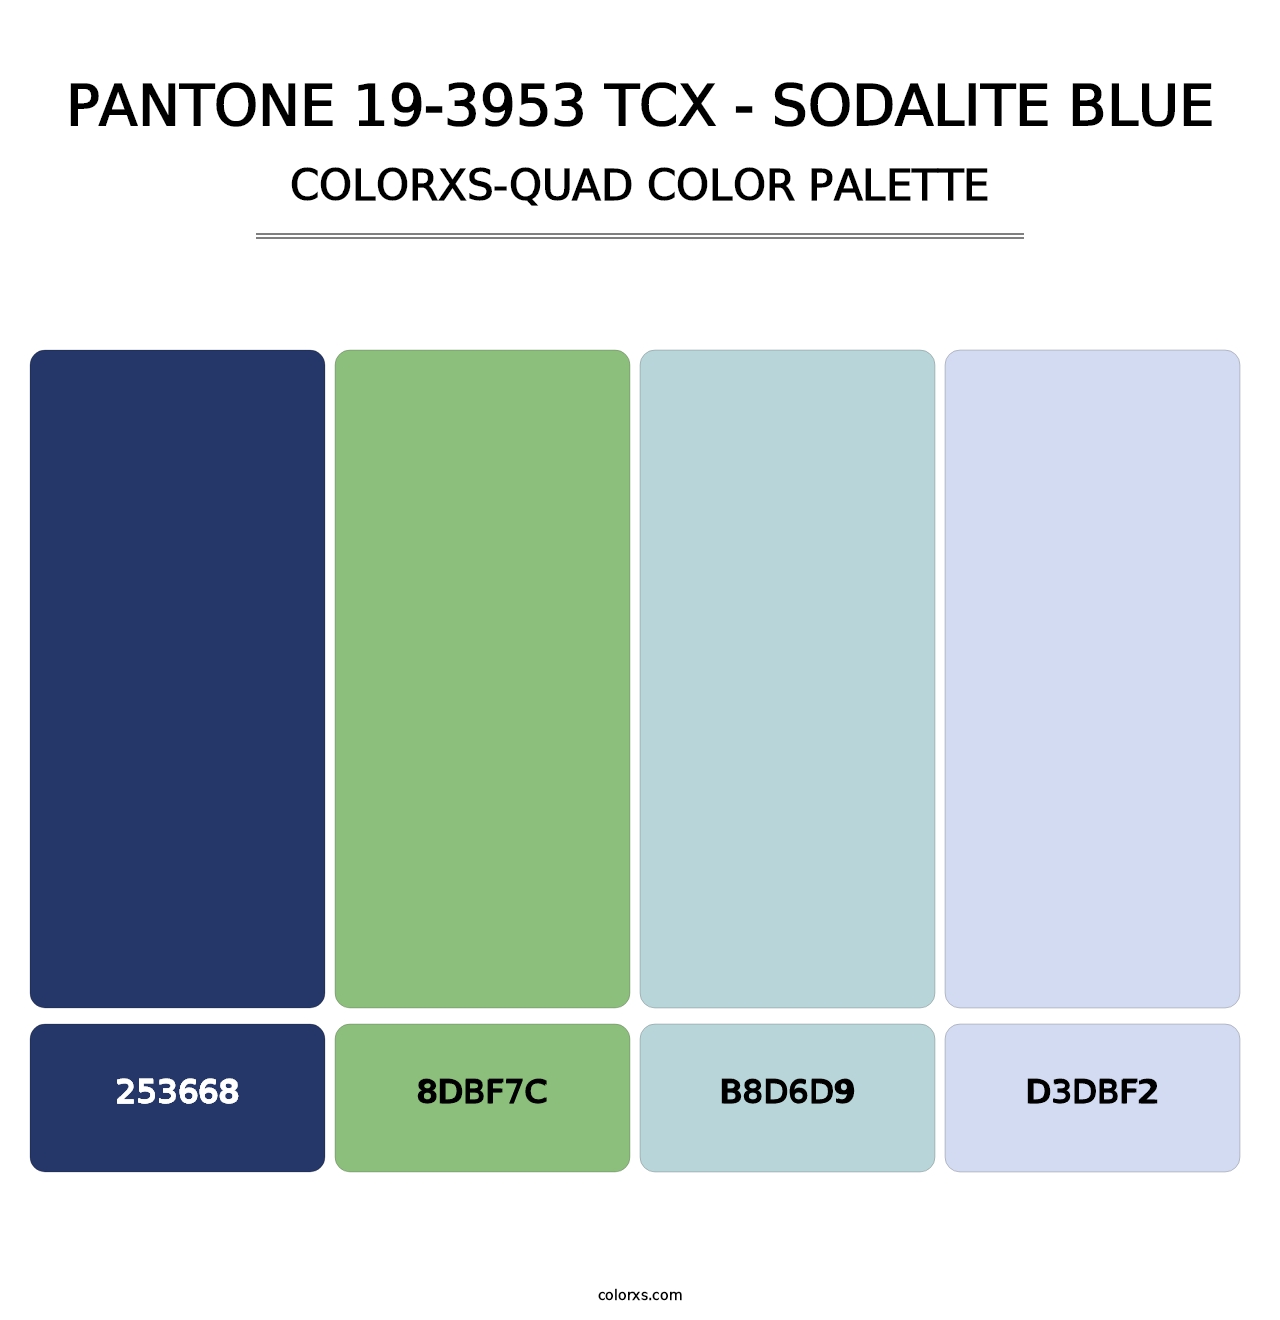 PANTONE 19-3953 TCX - Sodalite Blue - Colorxs Quad Palette